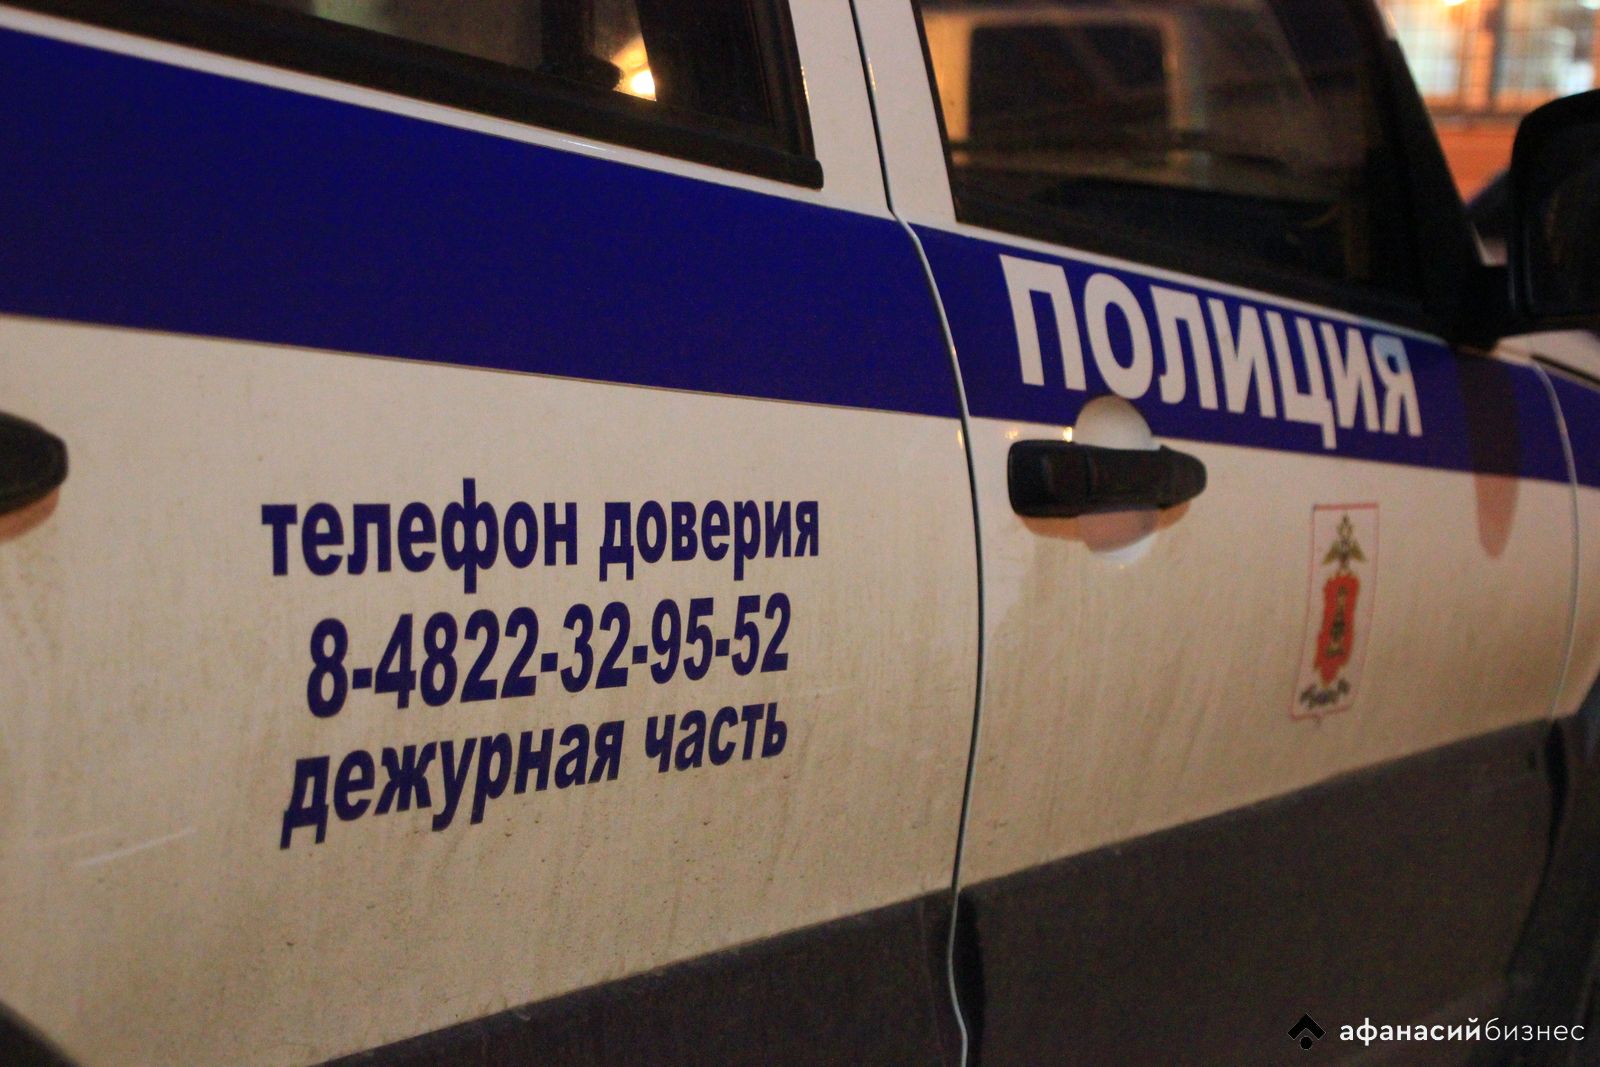 Житель Тверской области сломал мотоцикл и заявил в полицию о краже - новости Афанасий